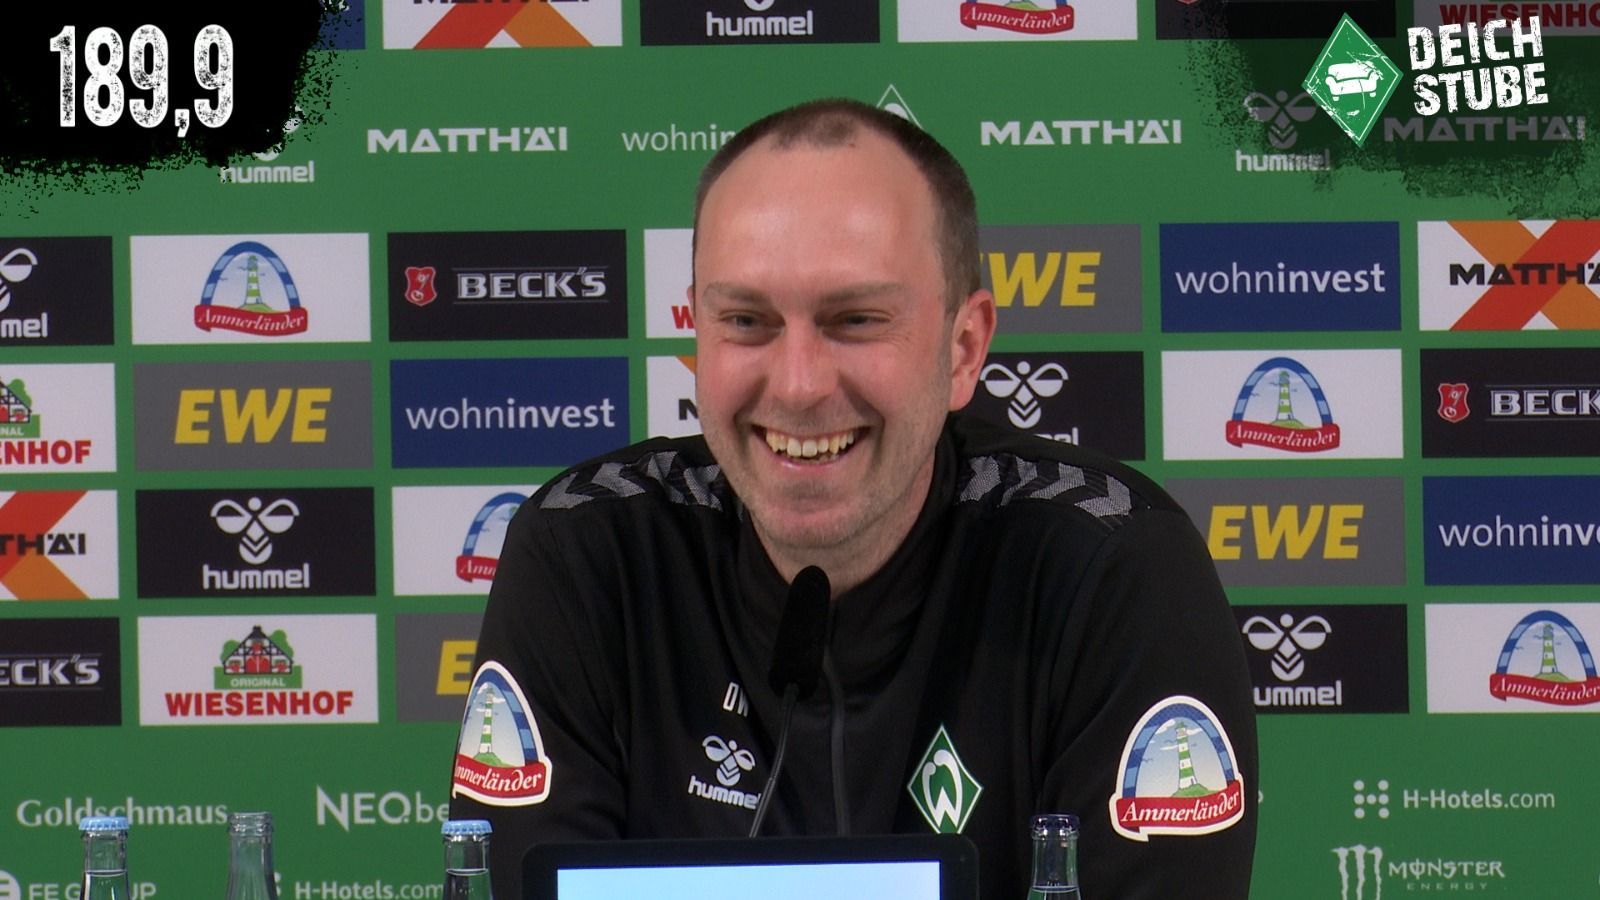 Vor Werder Bremen gegen den FC Augsburg: Die Highlights der Pressekonferenz in 189,9 Sekunden!